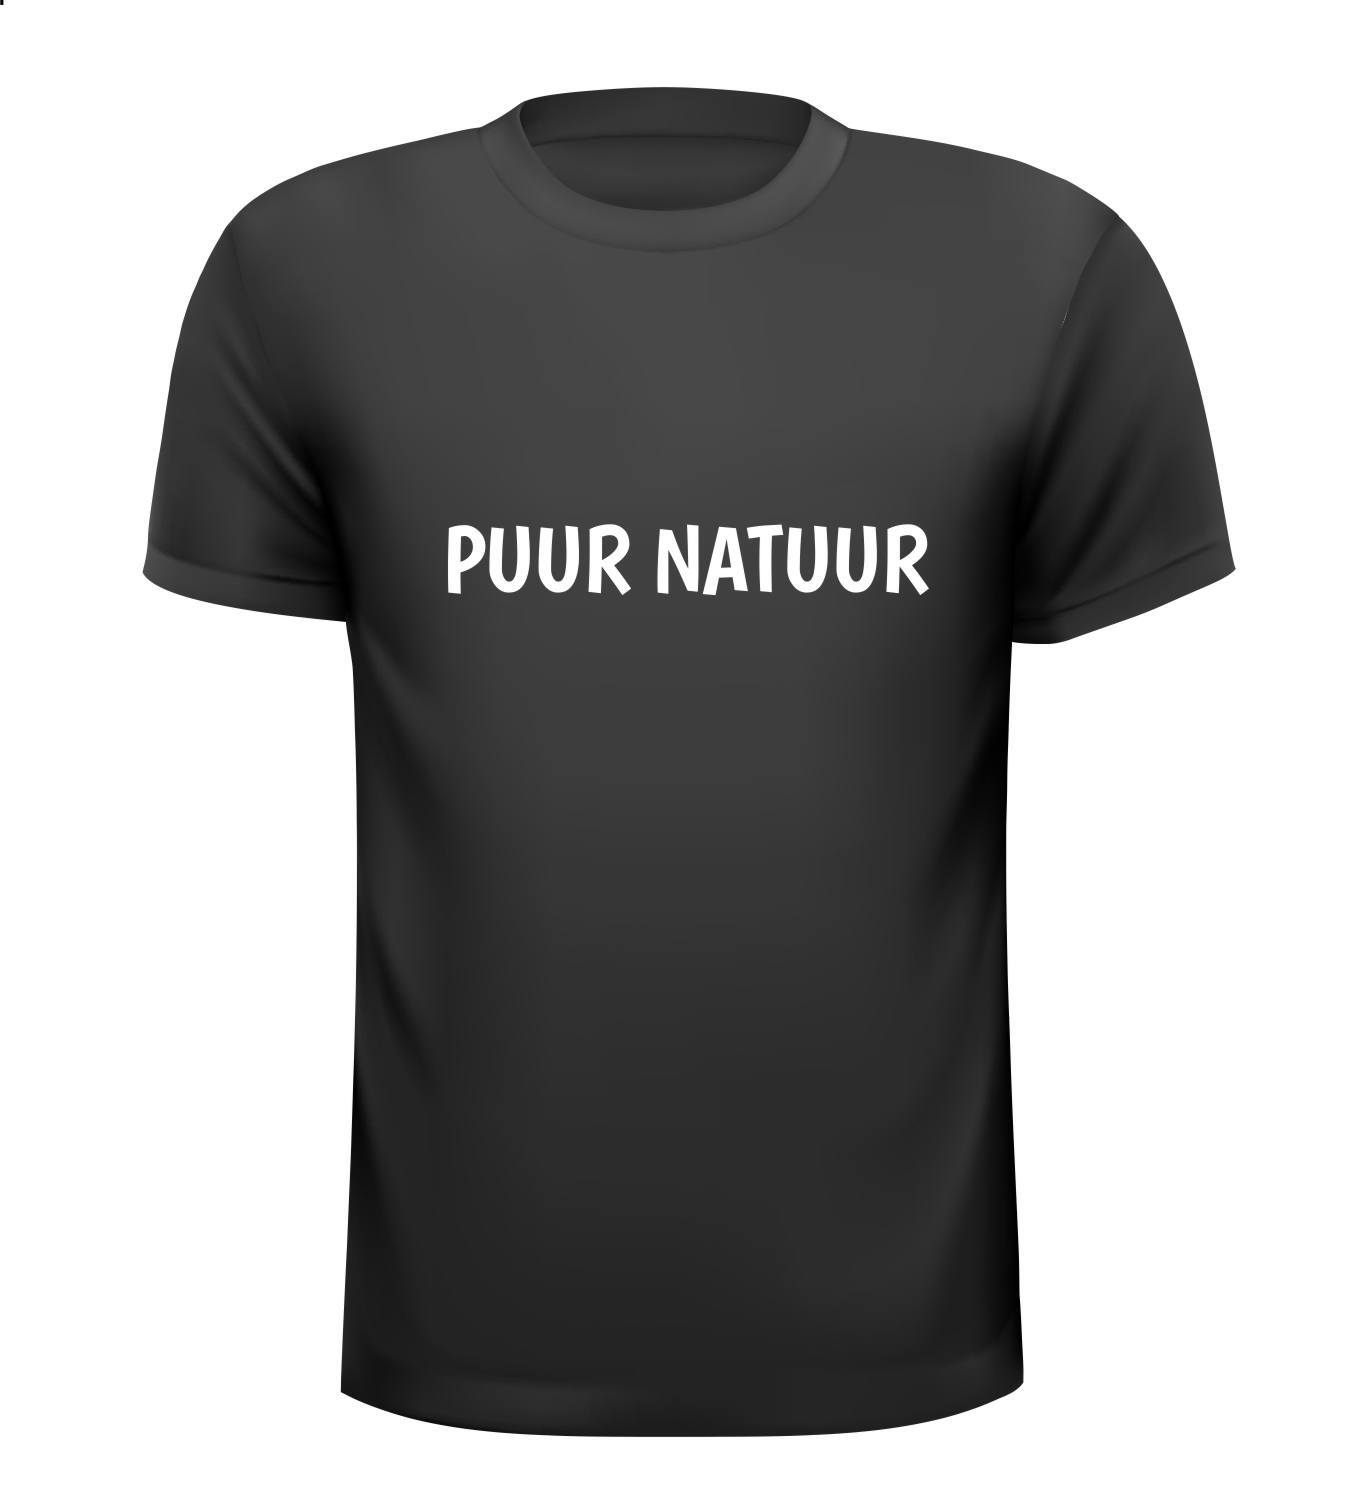 Puur natuur shirt 100 procent natuurlijk biologisch grappig humor